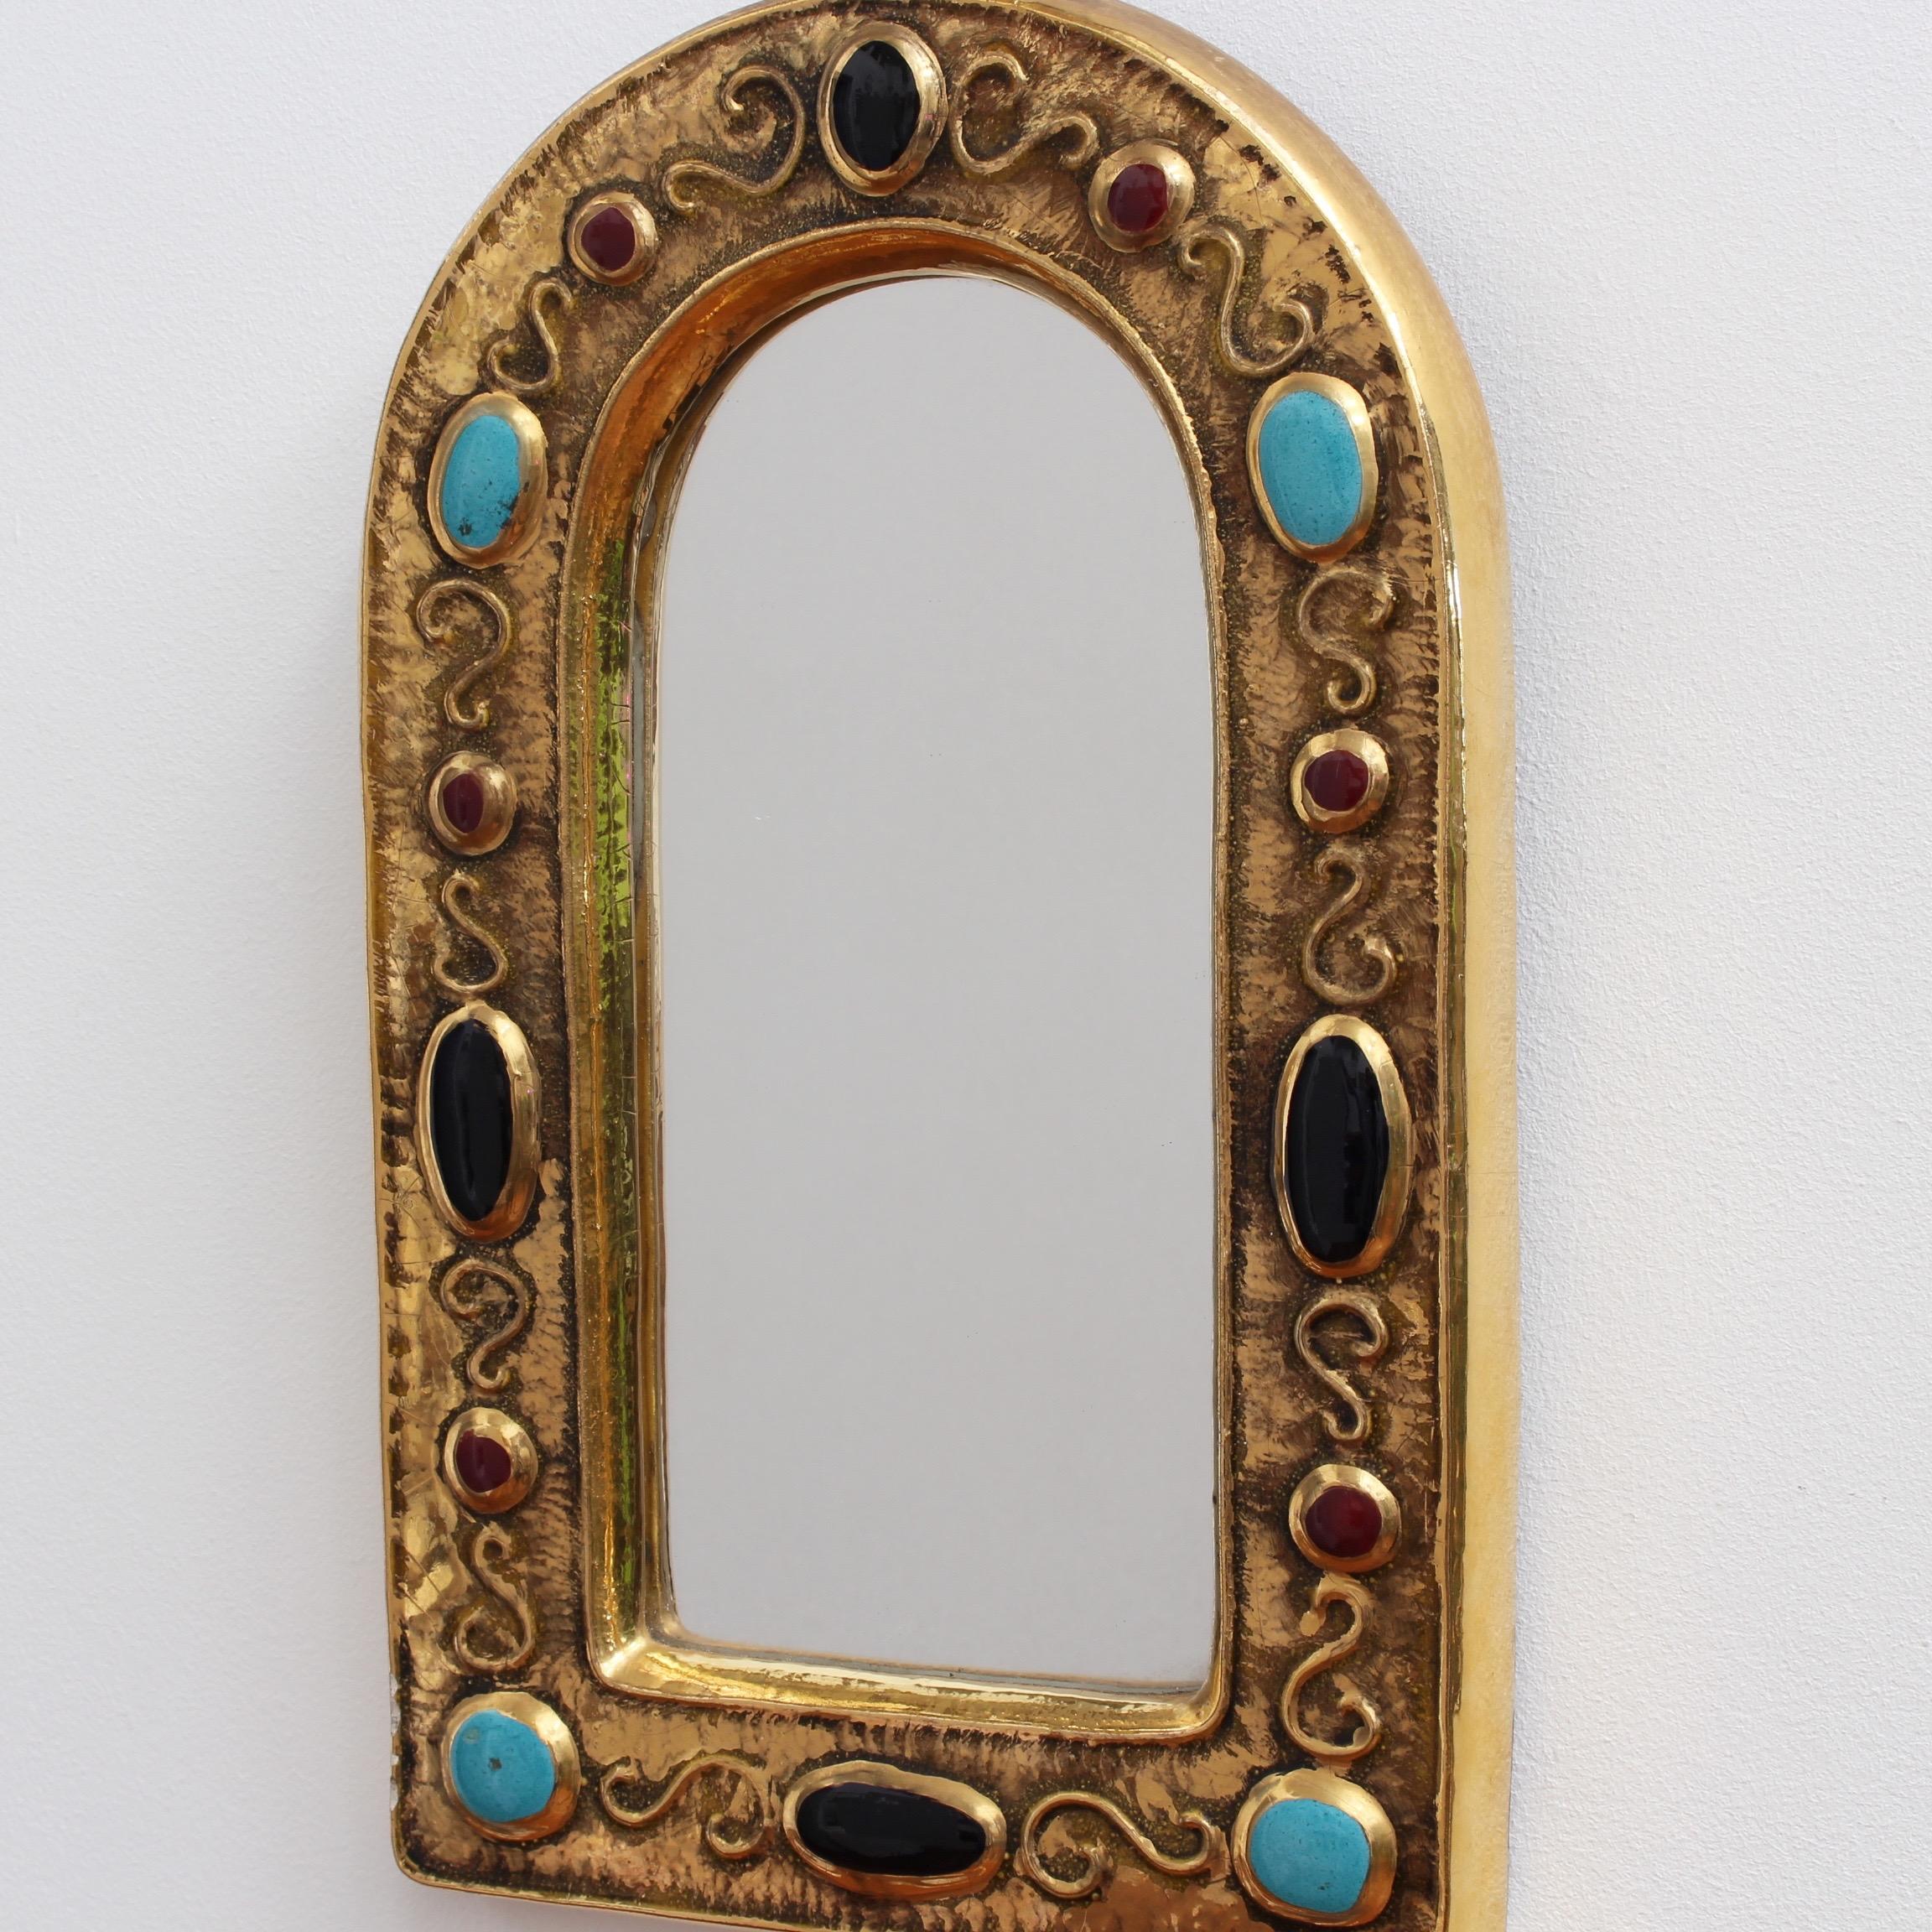 Glazed Byzantine Style Ceramic Wall Mirror by François Lembo, circa 1960s-1970s